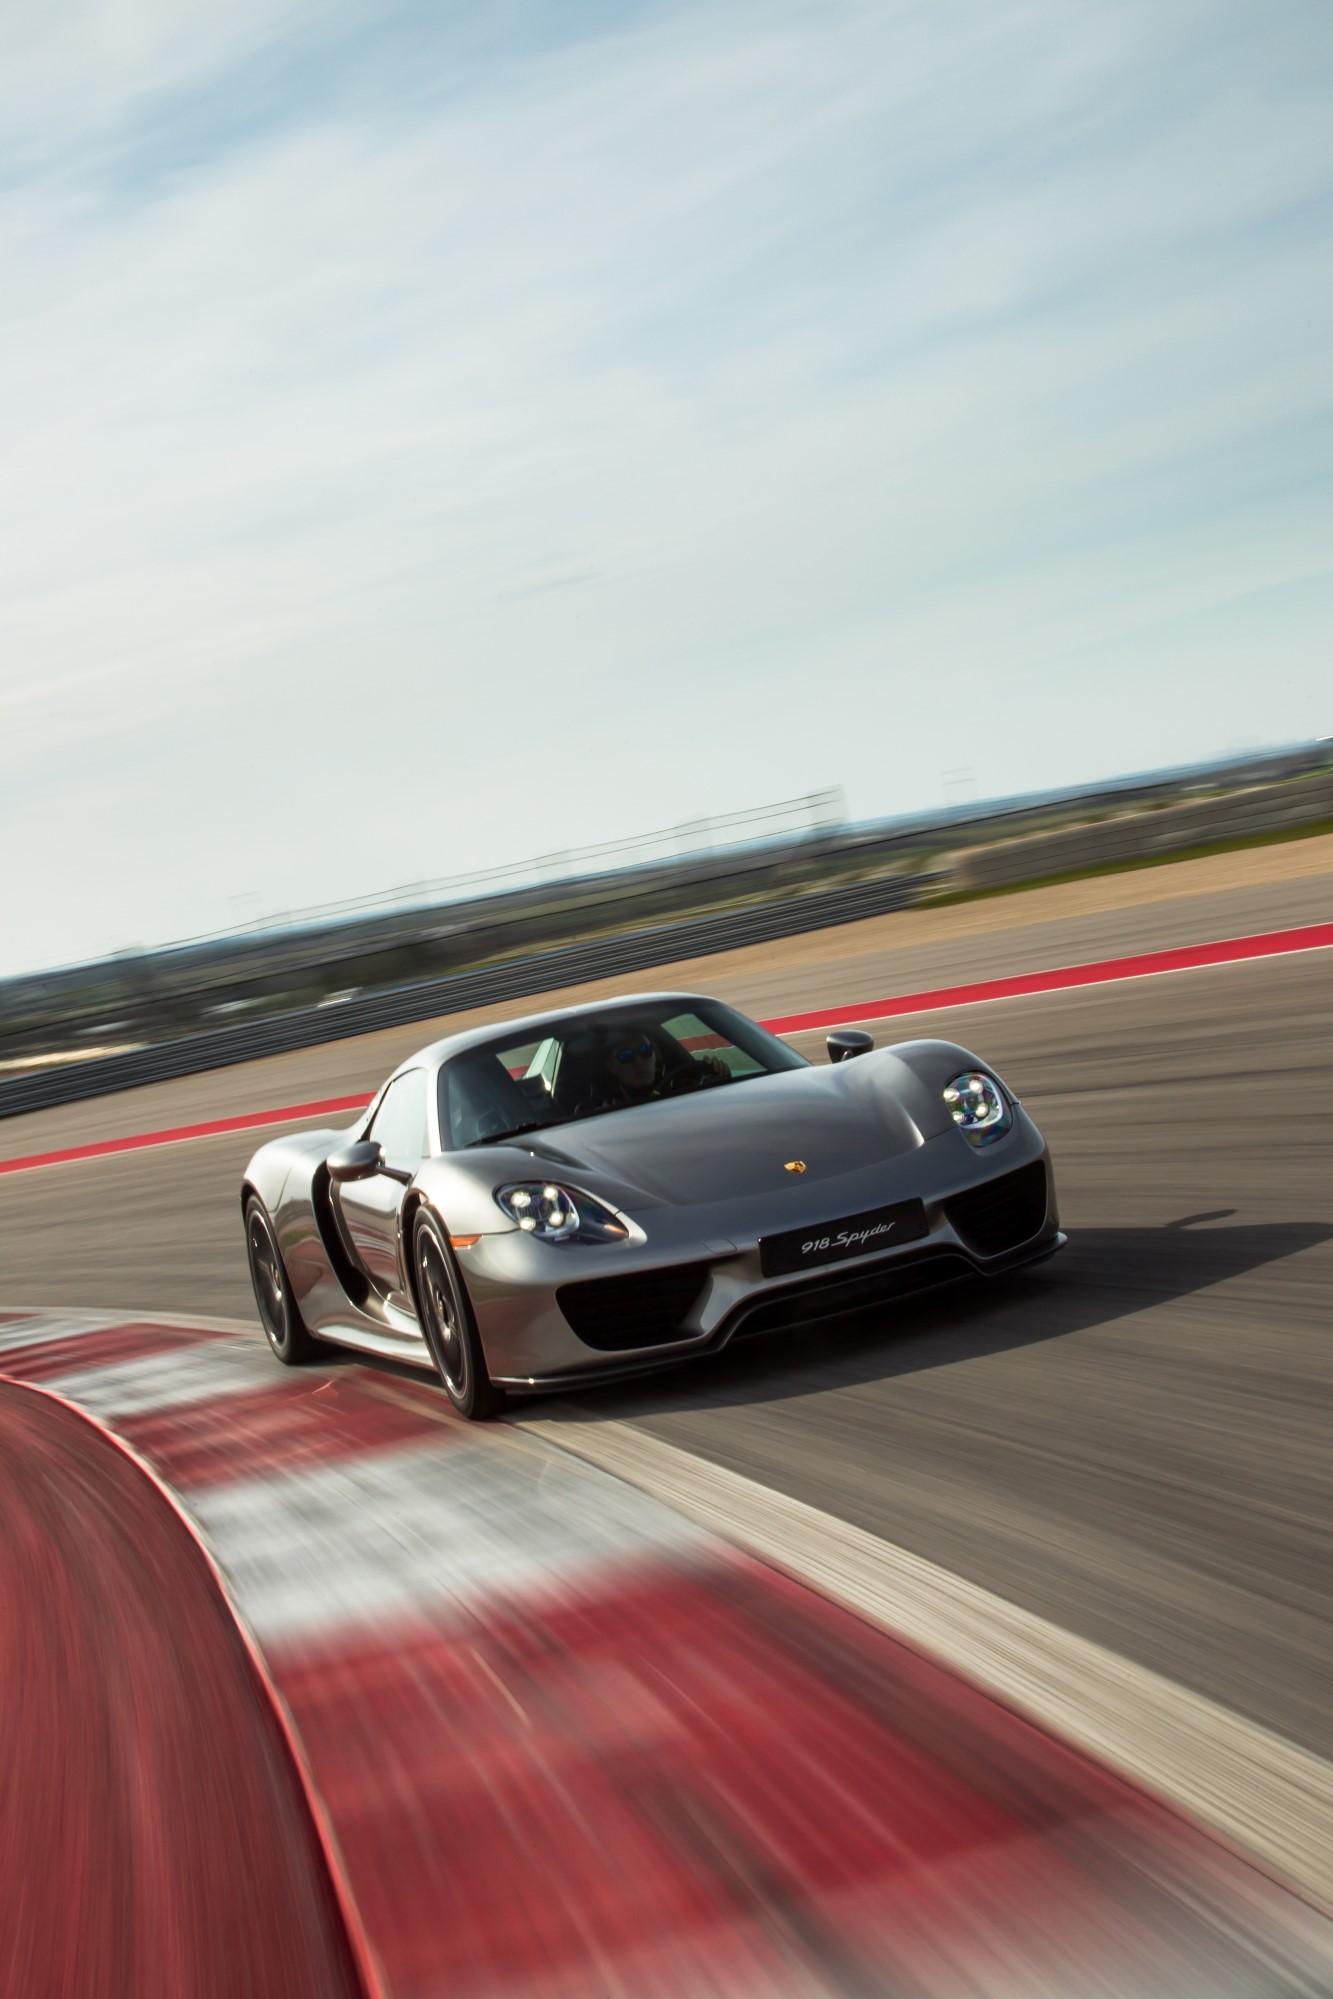 Porsche Spyder Re Prices Specs And Photos The